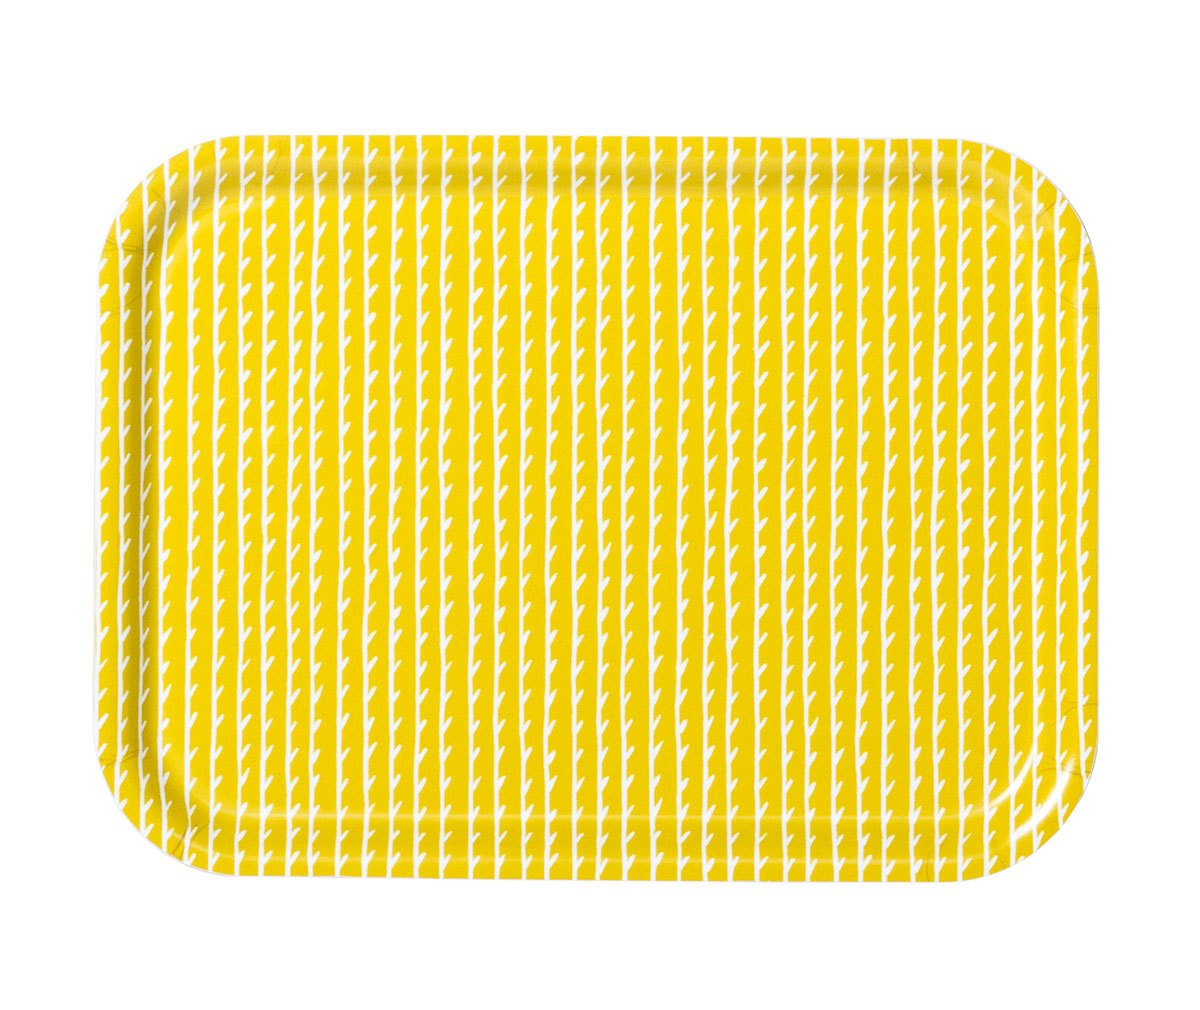 Artek Rivi Tray Mustard/White, 27 x 20 cm